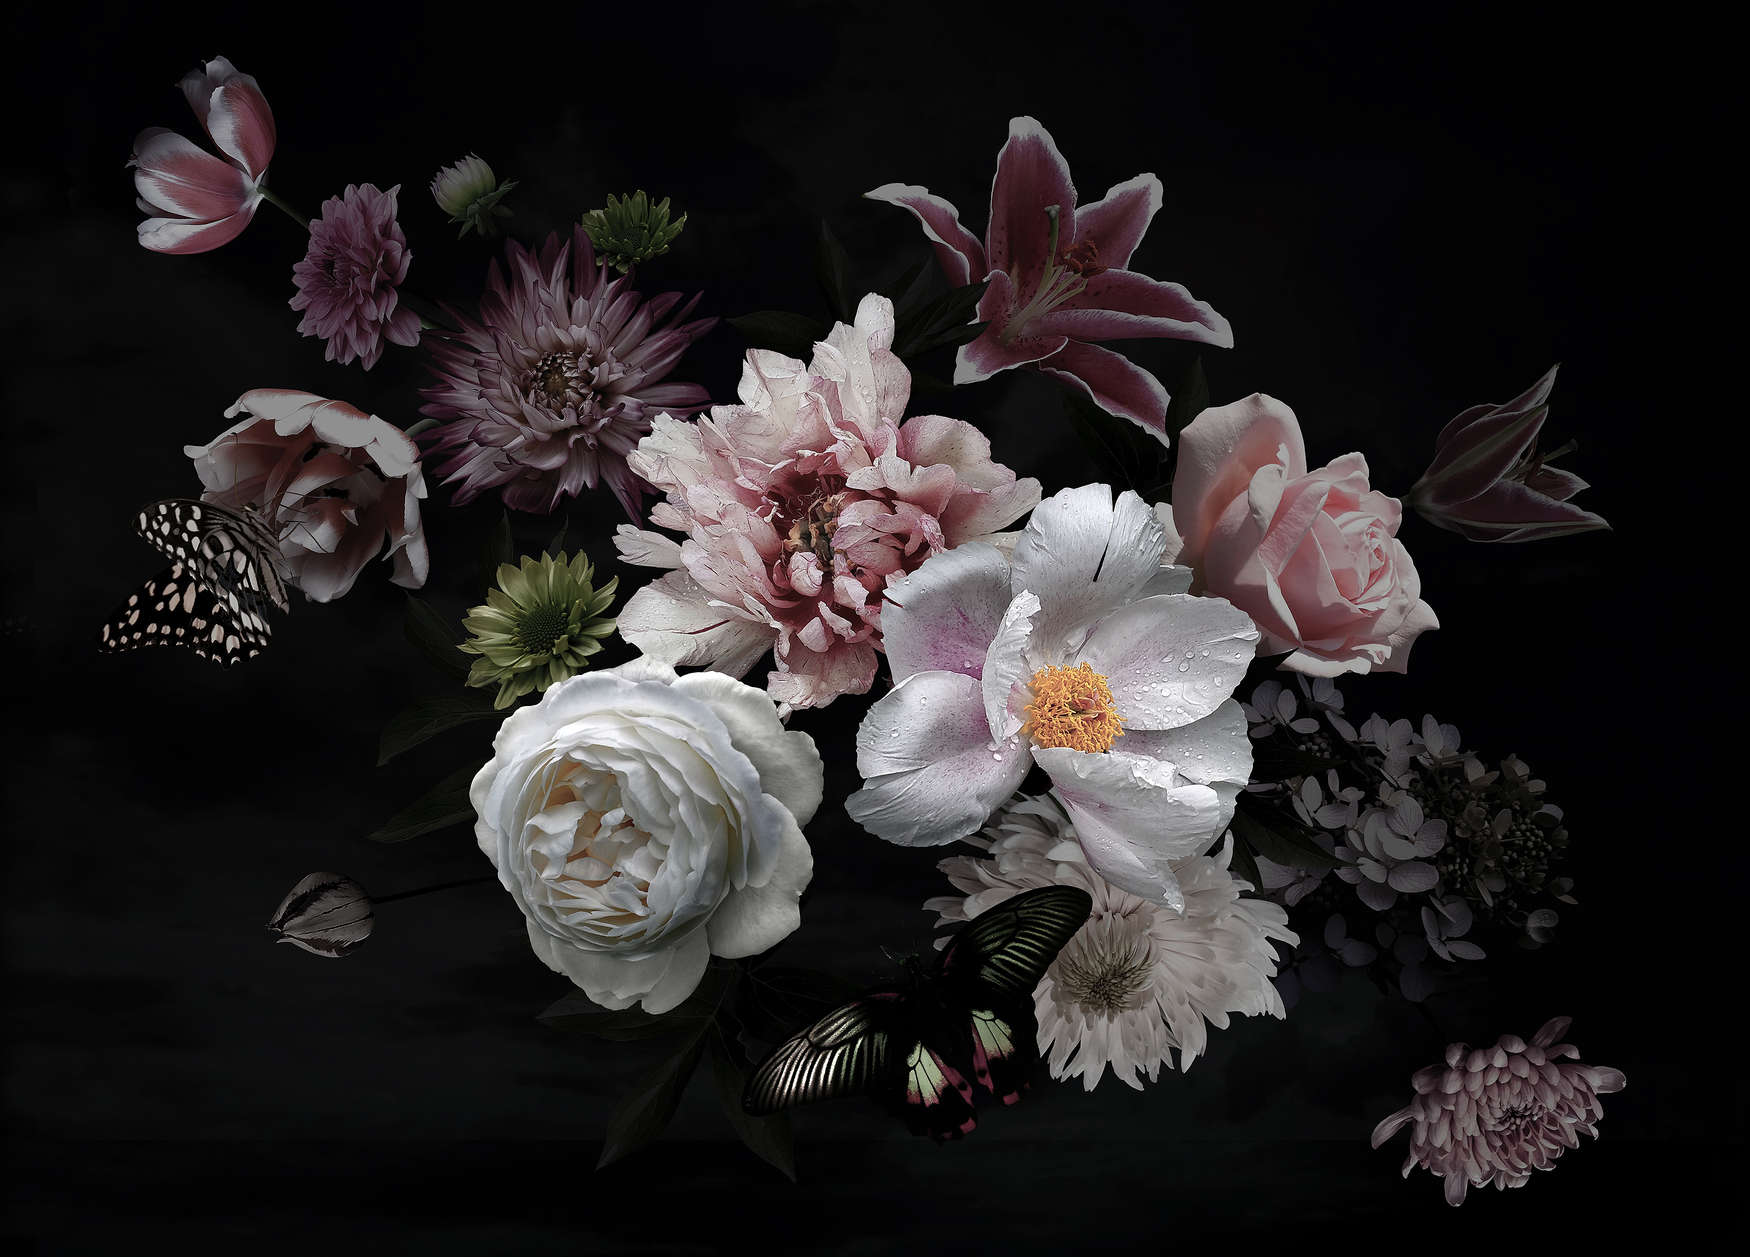             Diversen bloemen met vlinder behang - zwart, roze, wit
        